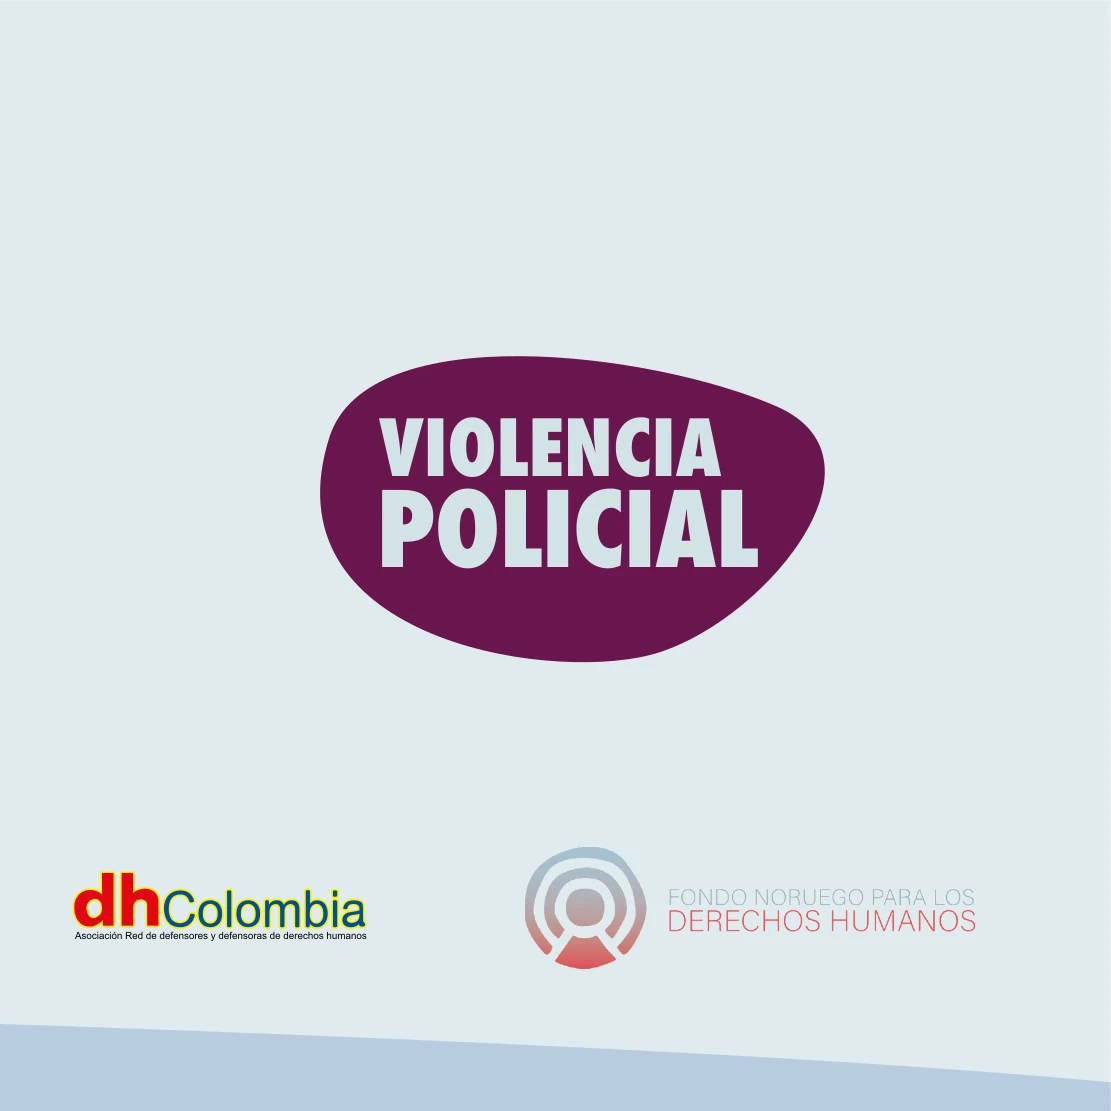 dhColombia Capacitación y gestión del conocimiento en materia de litigio estratégico 6 10 violencia policial